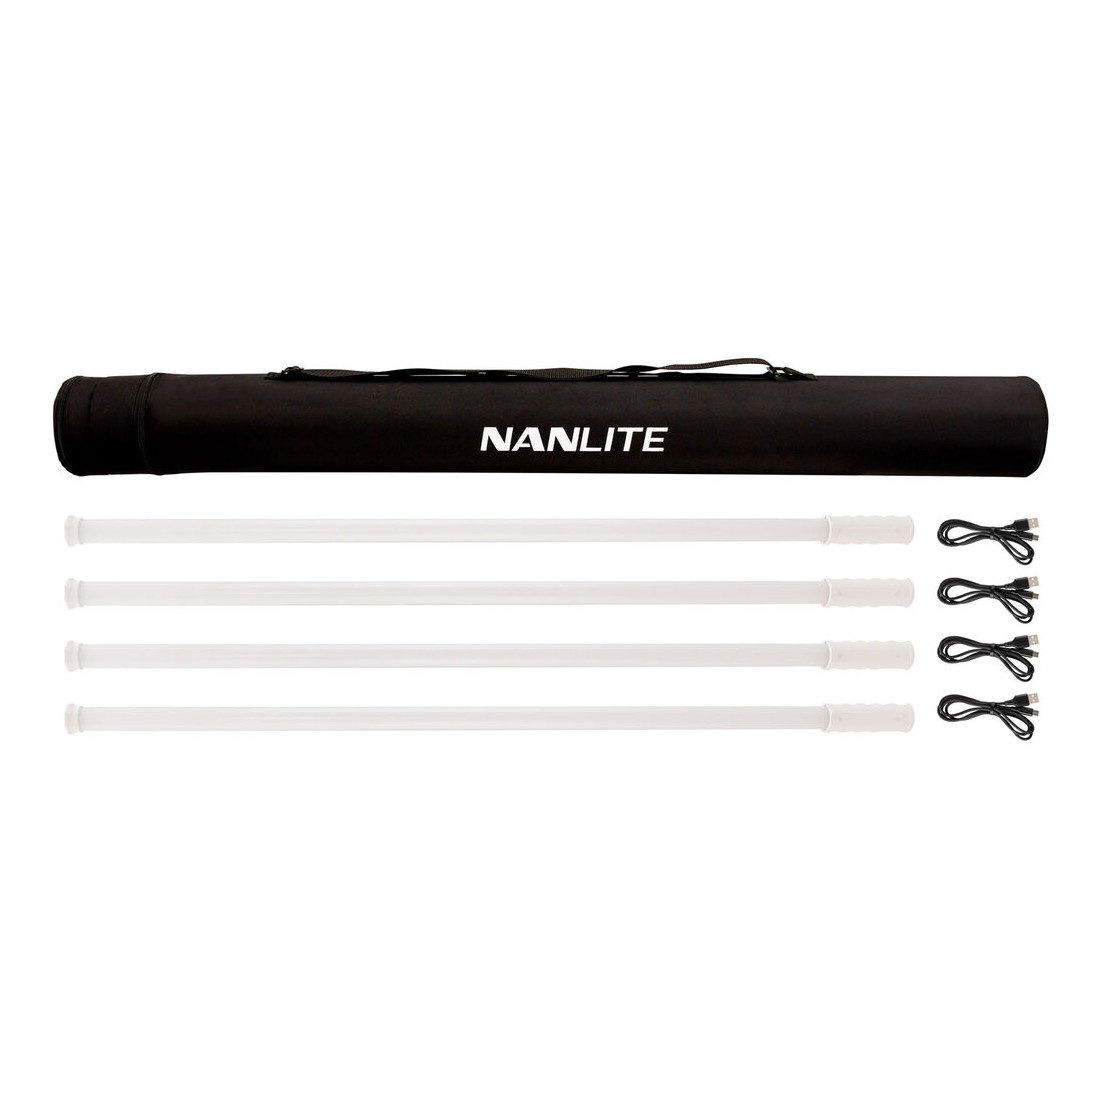 Nanlite Pavotube T8-7X RGBWW LED Pixel Tube Quad Kit